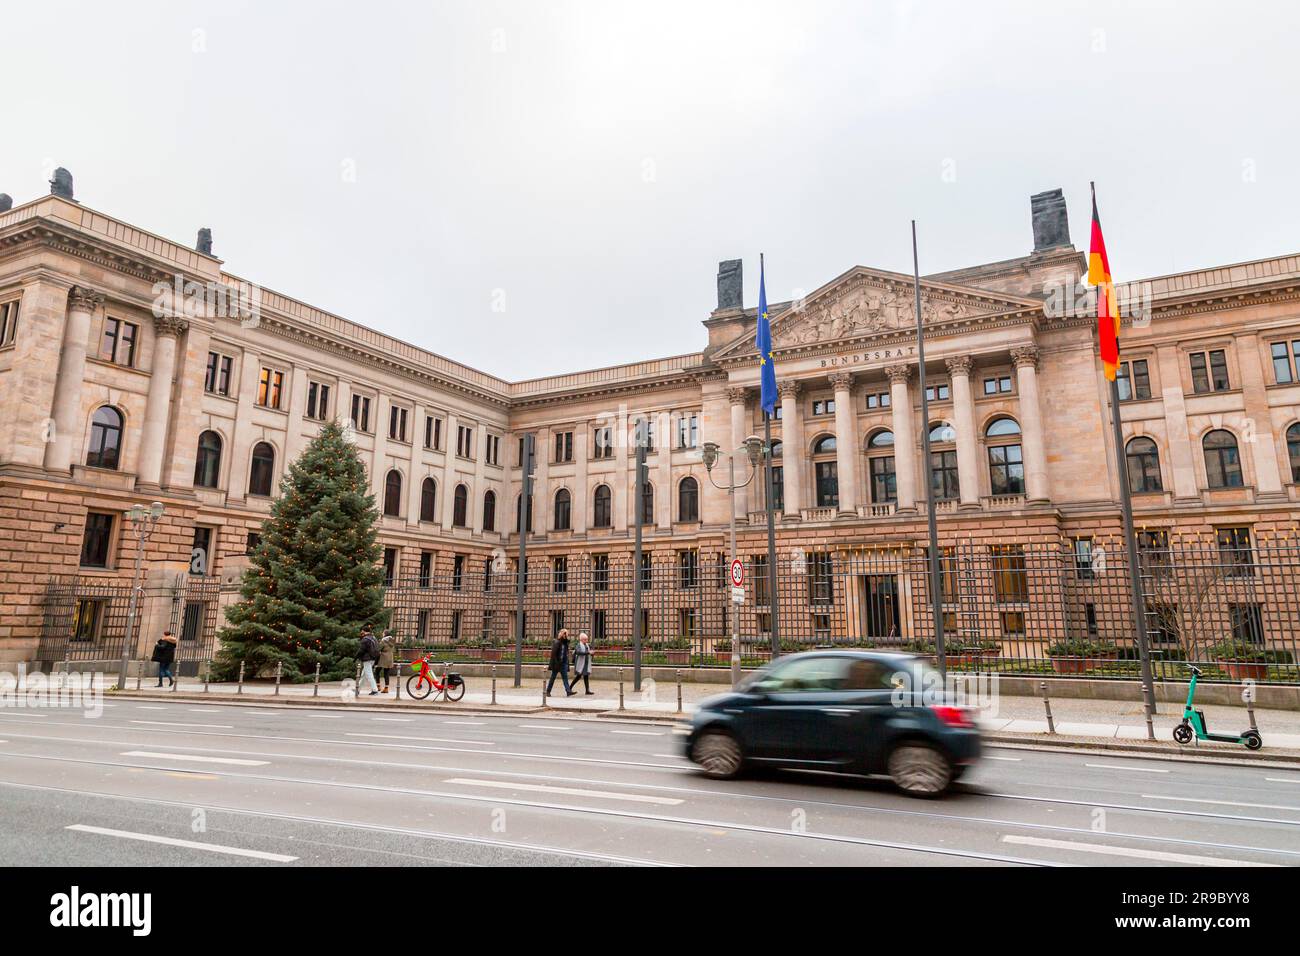 Berlino, Germania - 21 dicembre 2021: La camera dei lord prussiana a Berlino è stata il parlamento della Prussia dal 1850 al 1918. Oggi, l'edificio è usato come Foto Stock